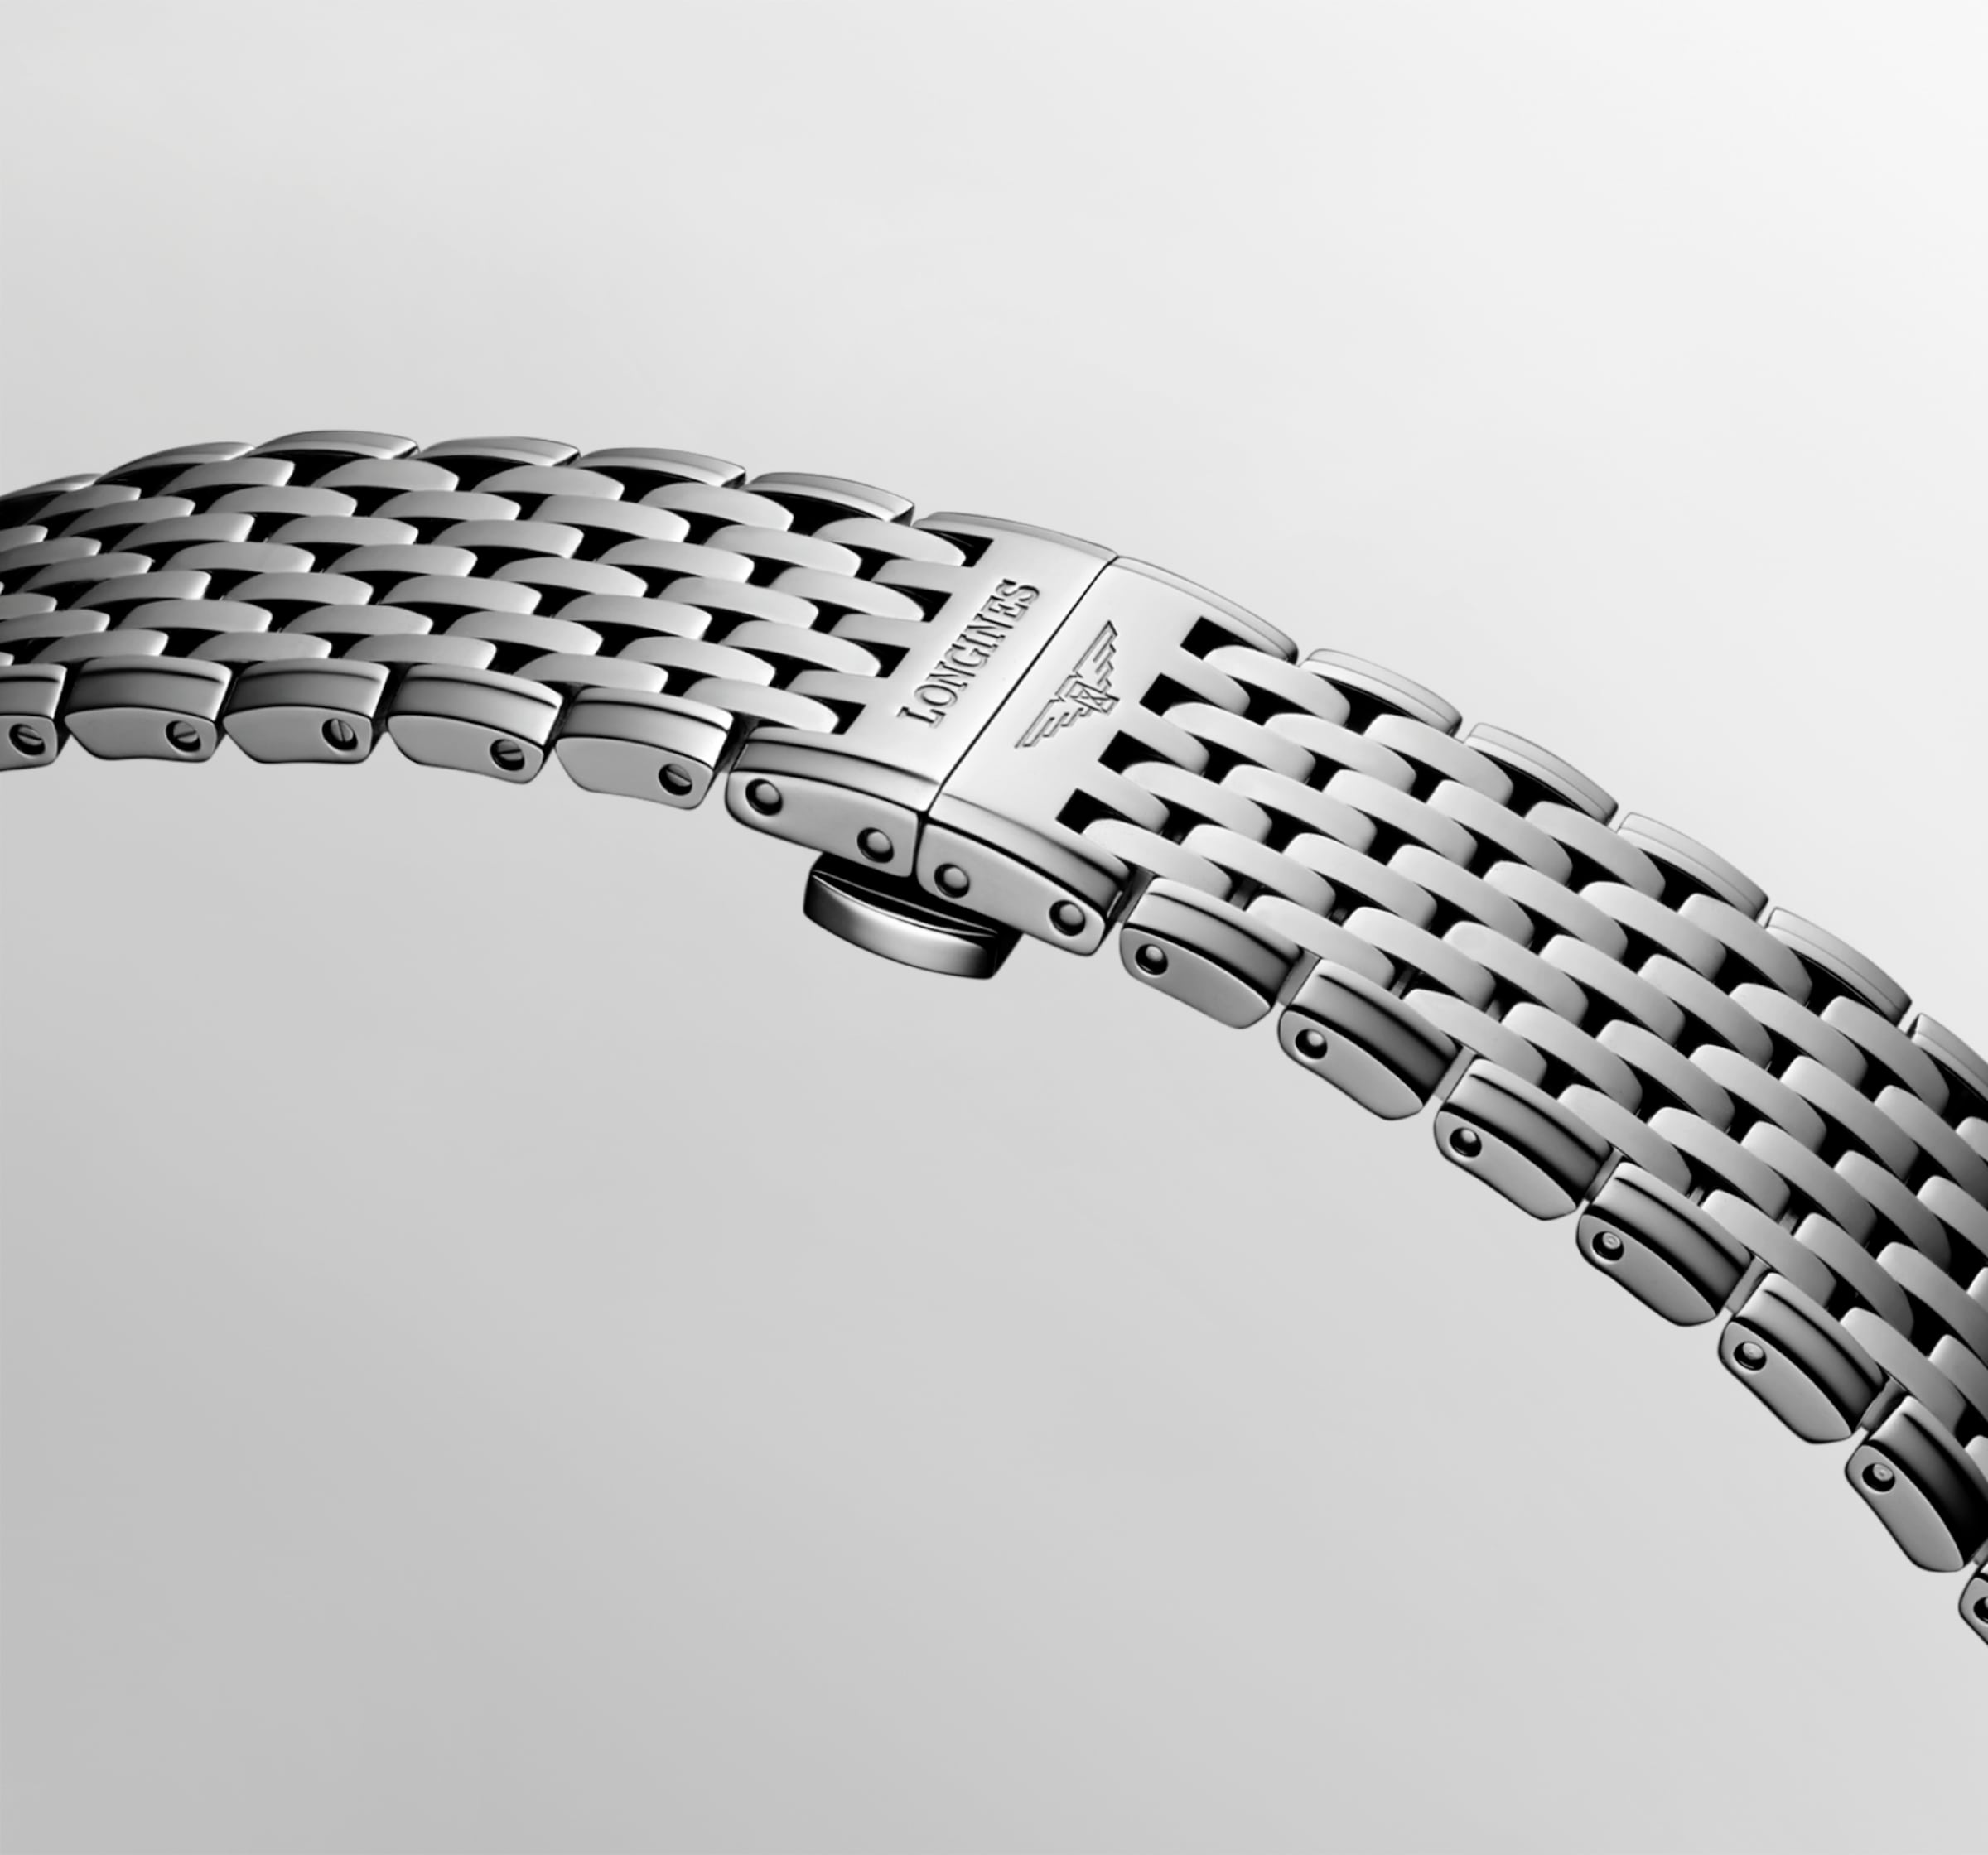 Longines LA GRANDE CLASSIQUE DE LONGINES Automatic Stainless steel Watch - L4.918.4.51.6